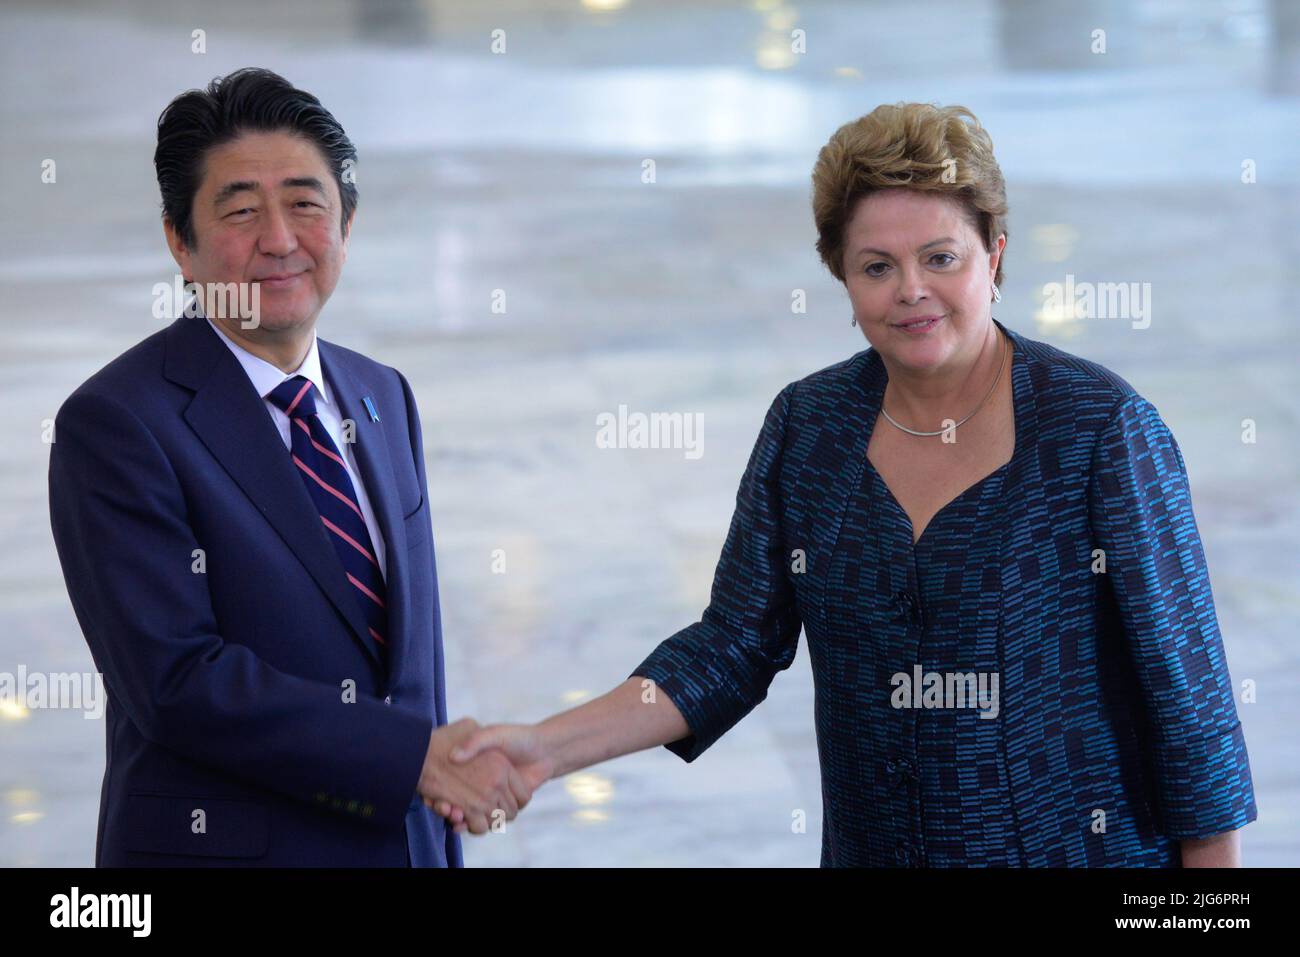 ***ATTENTION DOSSIER DE LA RÉDACTION PHOTO DE 01.08.2014 - BRASÍLIA, DF, 01.08.2014 - DEATH-SHINZO ABE - le Premier ministre du Japon de l'époque, Shinzo Abe, est reçu par le Président du Brésil de l'époque Dilma Rousseff à Palácio do Planalto, à Brasília, ce vendredi 1st. Ce vendredi, 08 juillet 2022, ancien Premier ministre Shinzo Abe, meurt après avoir été abattu au Japon. L'ancien premier ministre a été frappé lors d'un discours dans la ville de Nara, dans l'ouest du pays. Un homme a été arrêté et un fusil de chasse saisi. La mort a choqué le Japon, où le contrôle des armes à feu est strict et où des cas similaires sont très rares. Credit: Brésil photo Press/Alamy Live News Banque D'Images